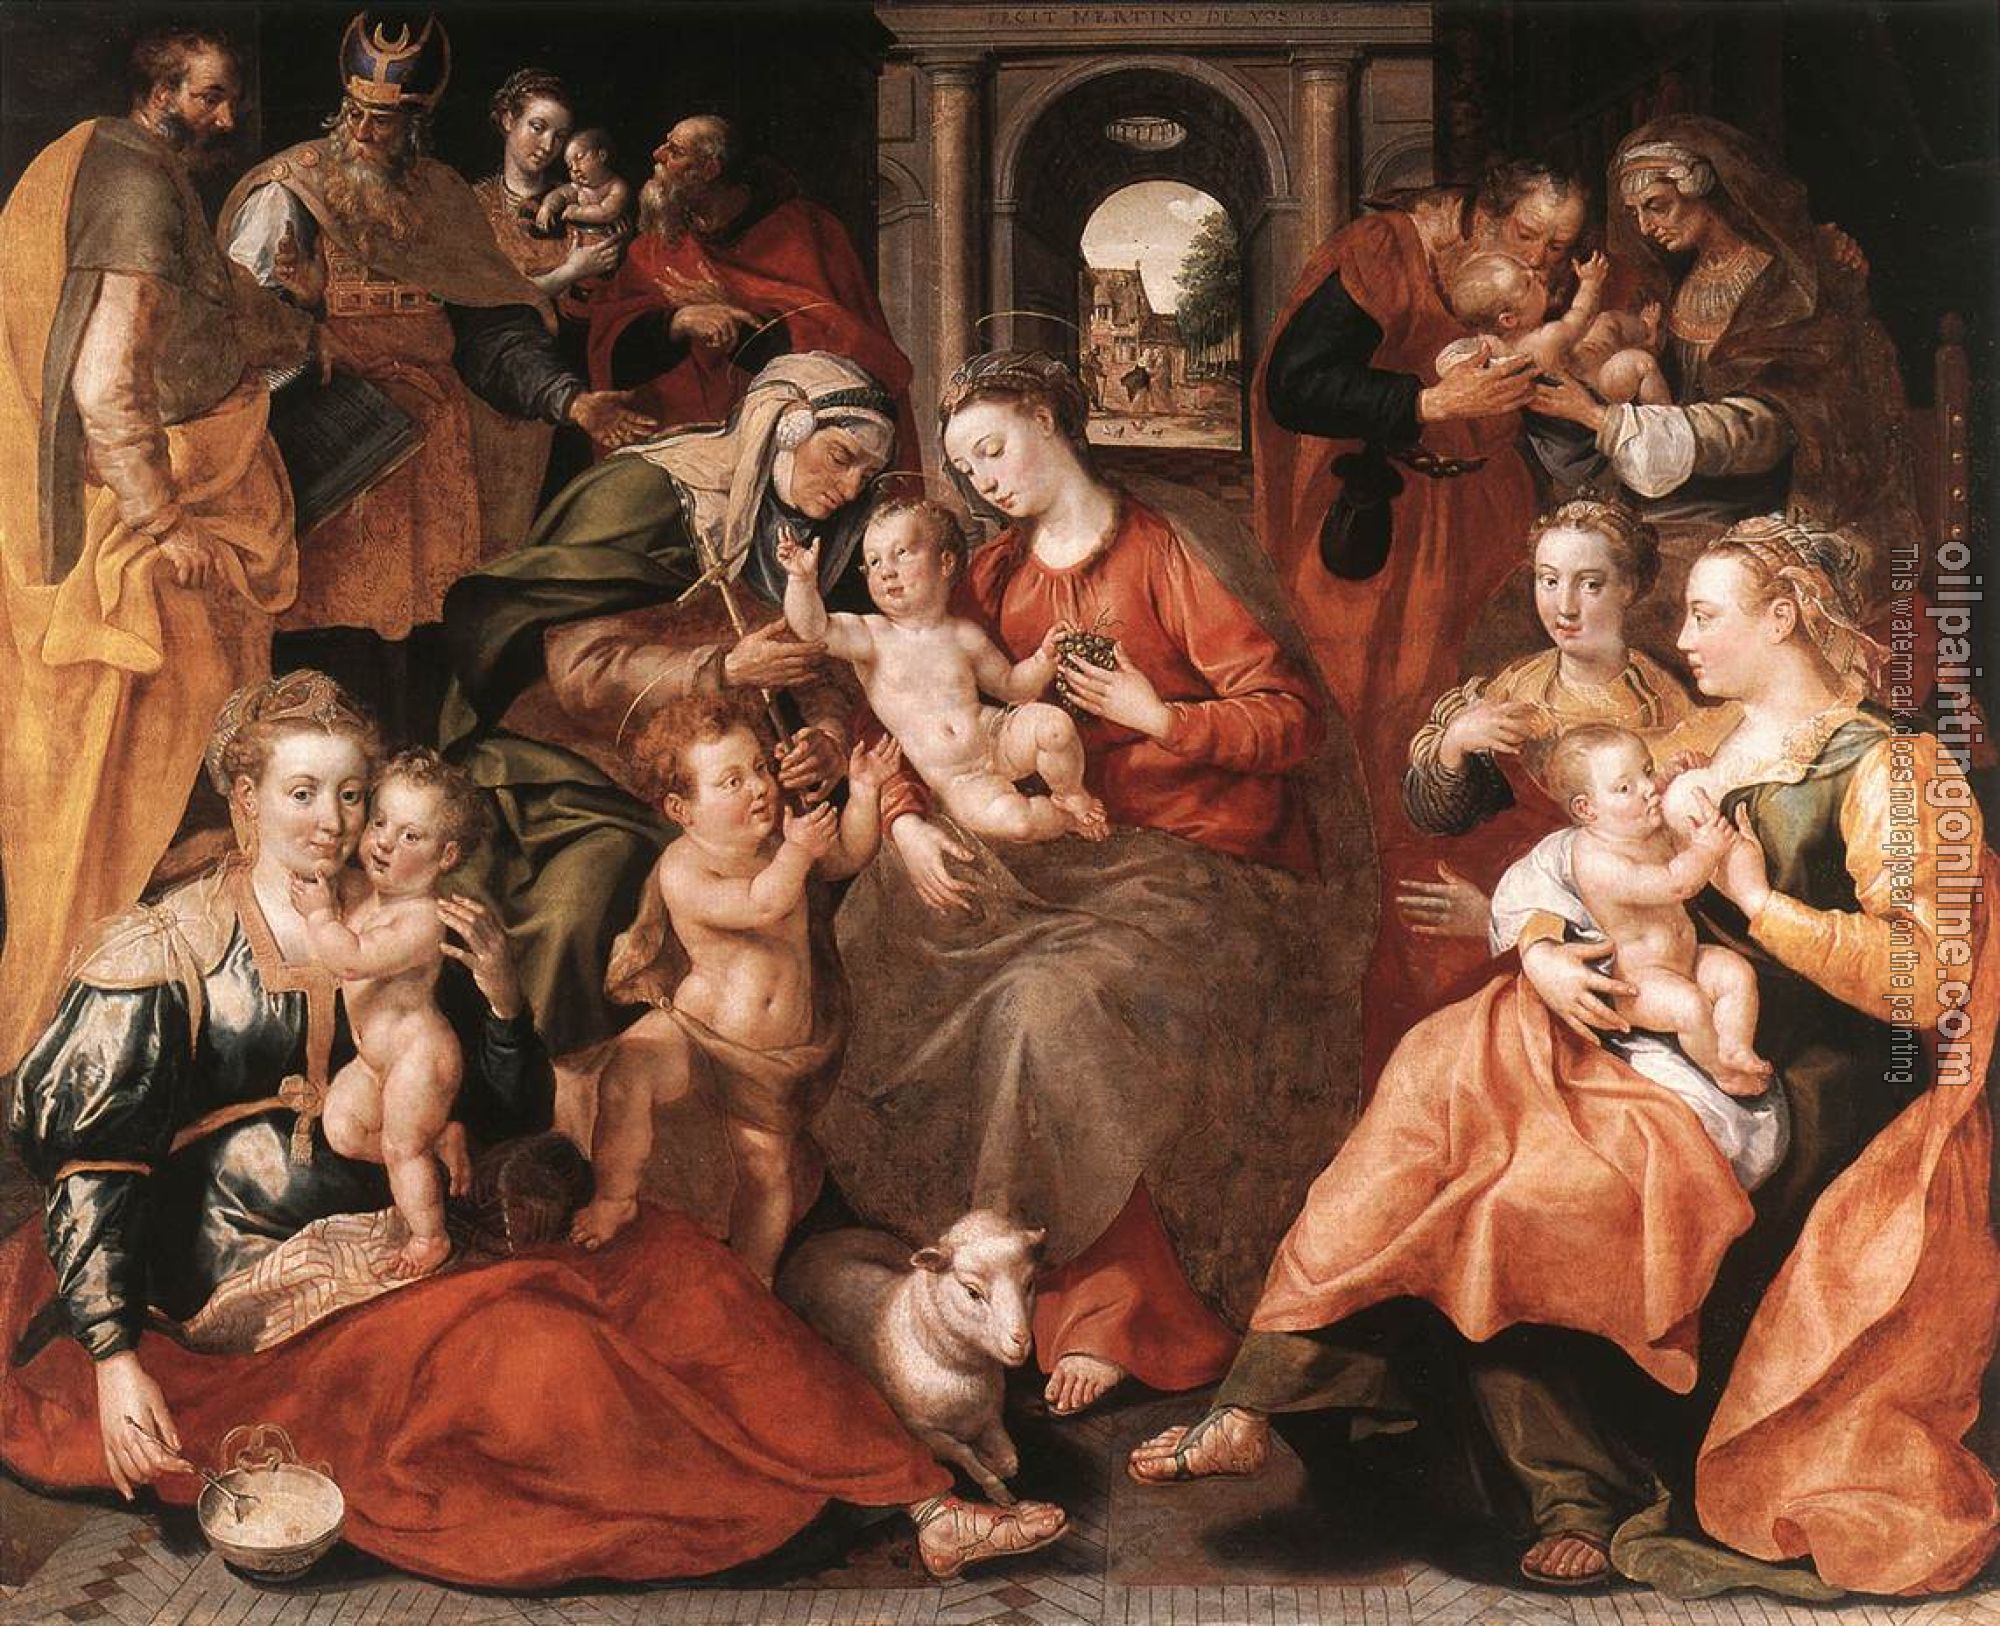 Vos, Marten de - The Family of St Anne